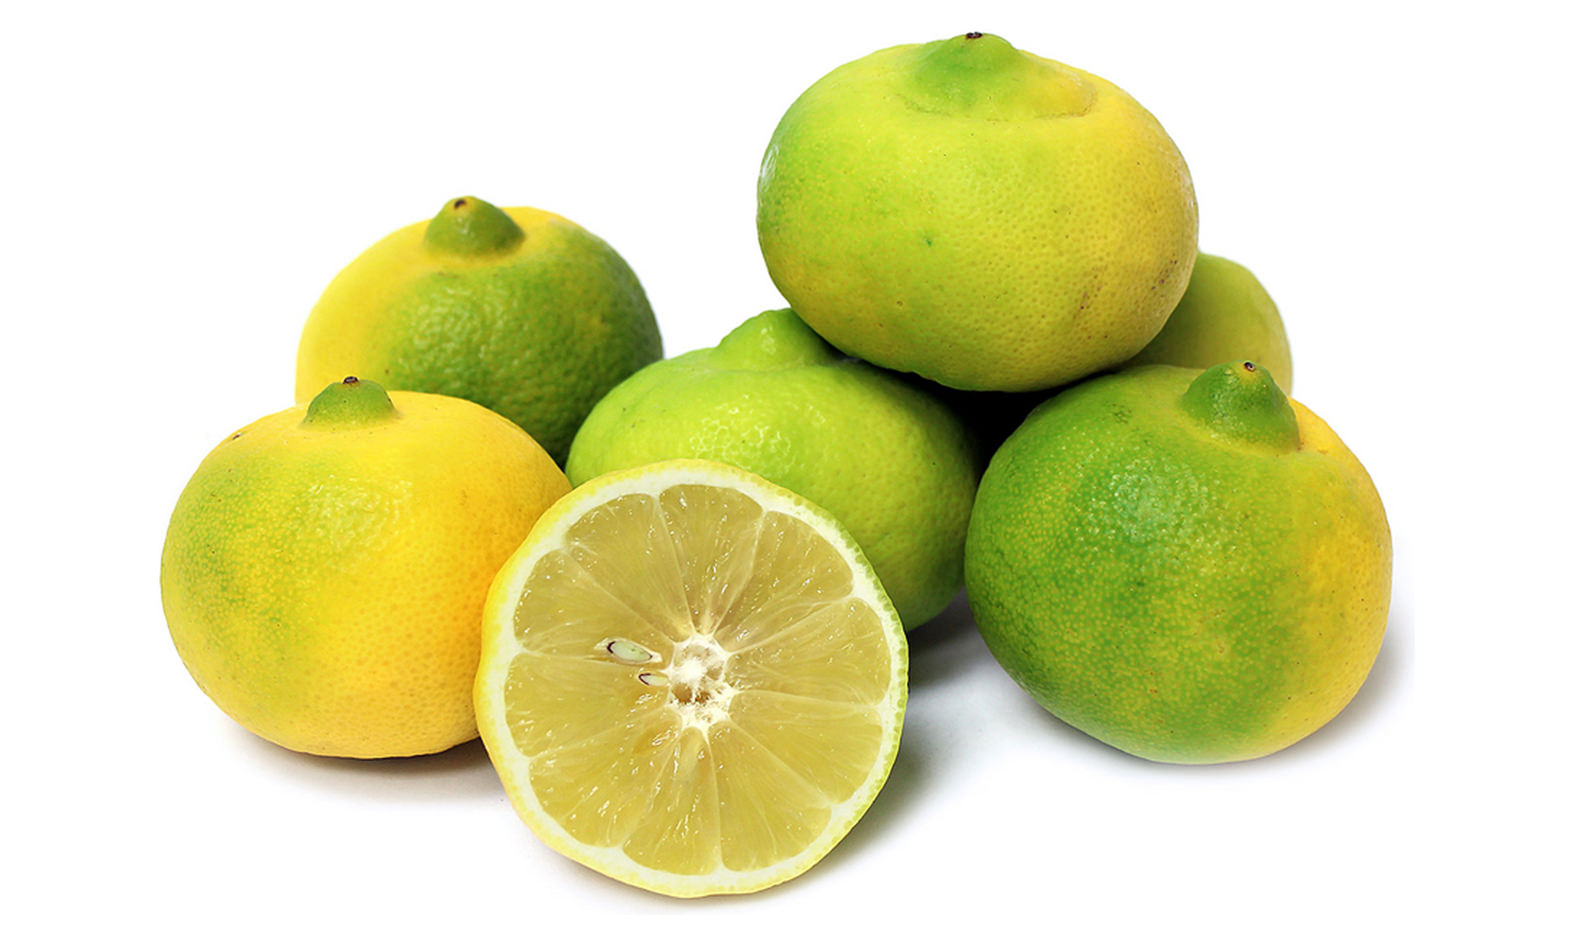 Sweet Lime Benefits: इम्युनिटी को बूस्ट करने के साथ बॉडी को भी करती है डिटॉक्स, जानिए मौसमी के और भी फायदे